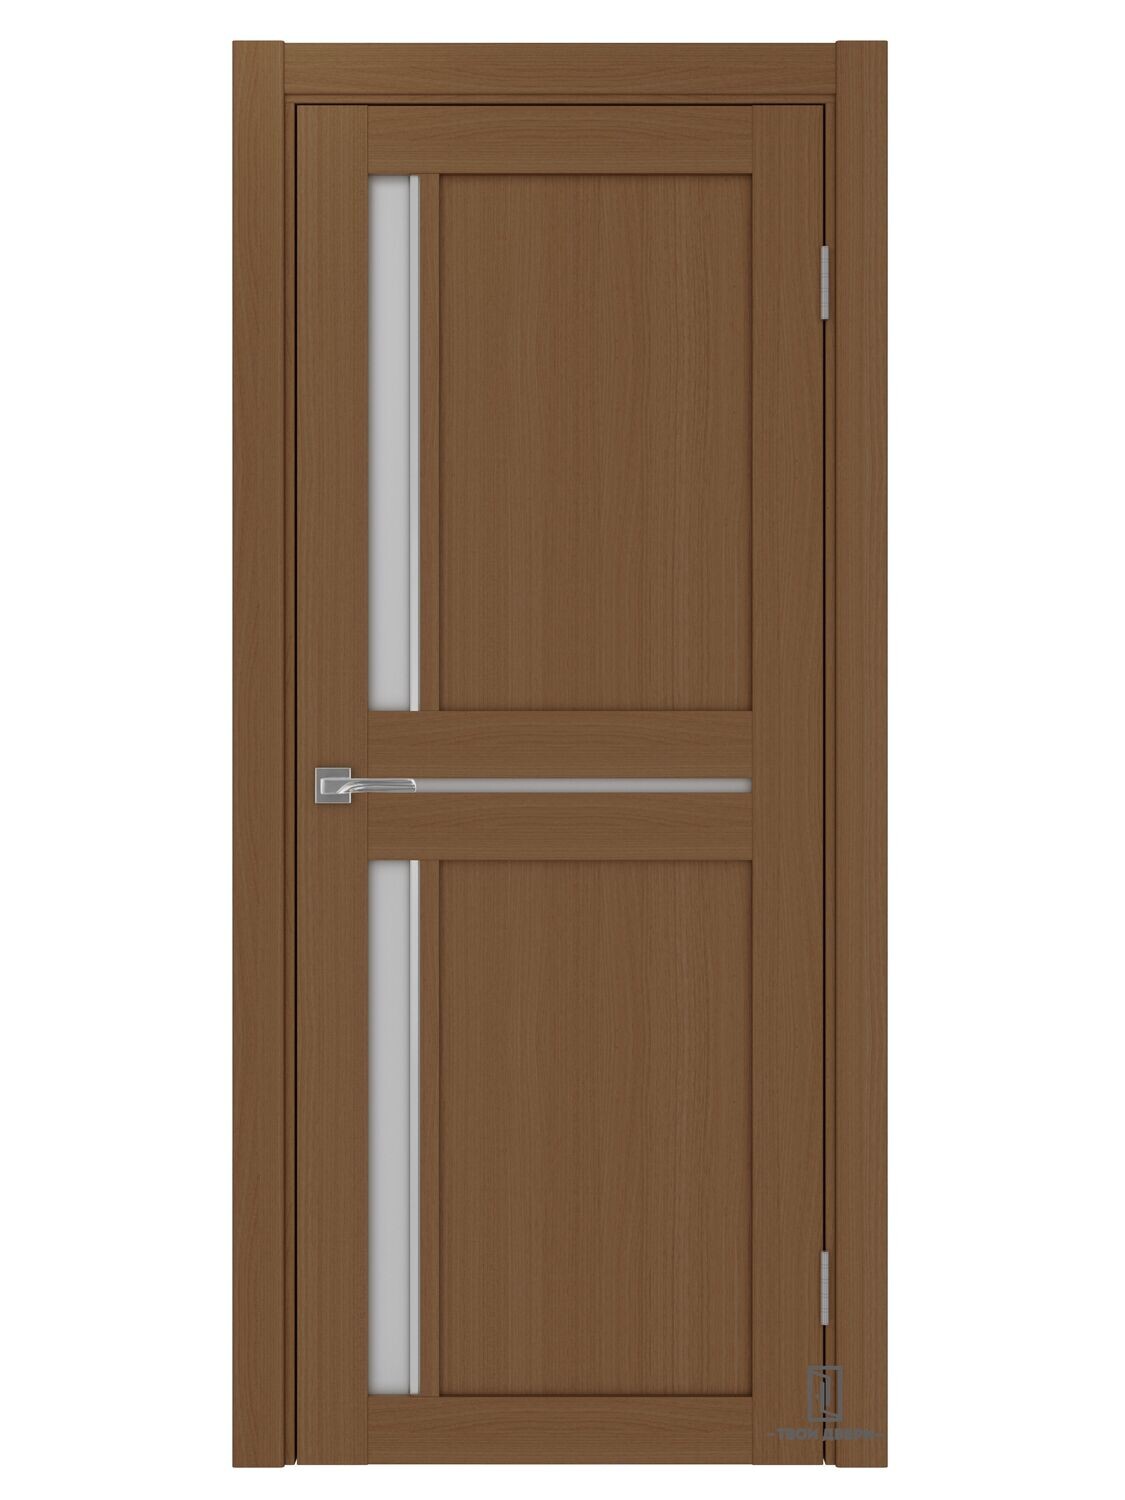 Дверь межкомнатная АПС 523.221 (молдинги), орех